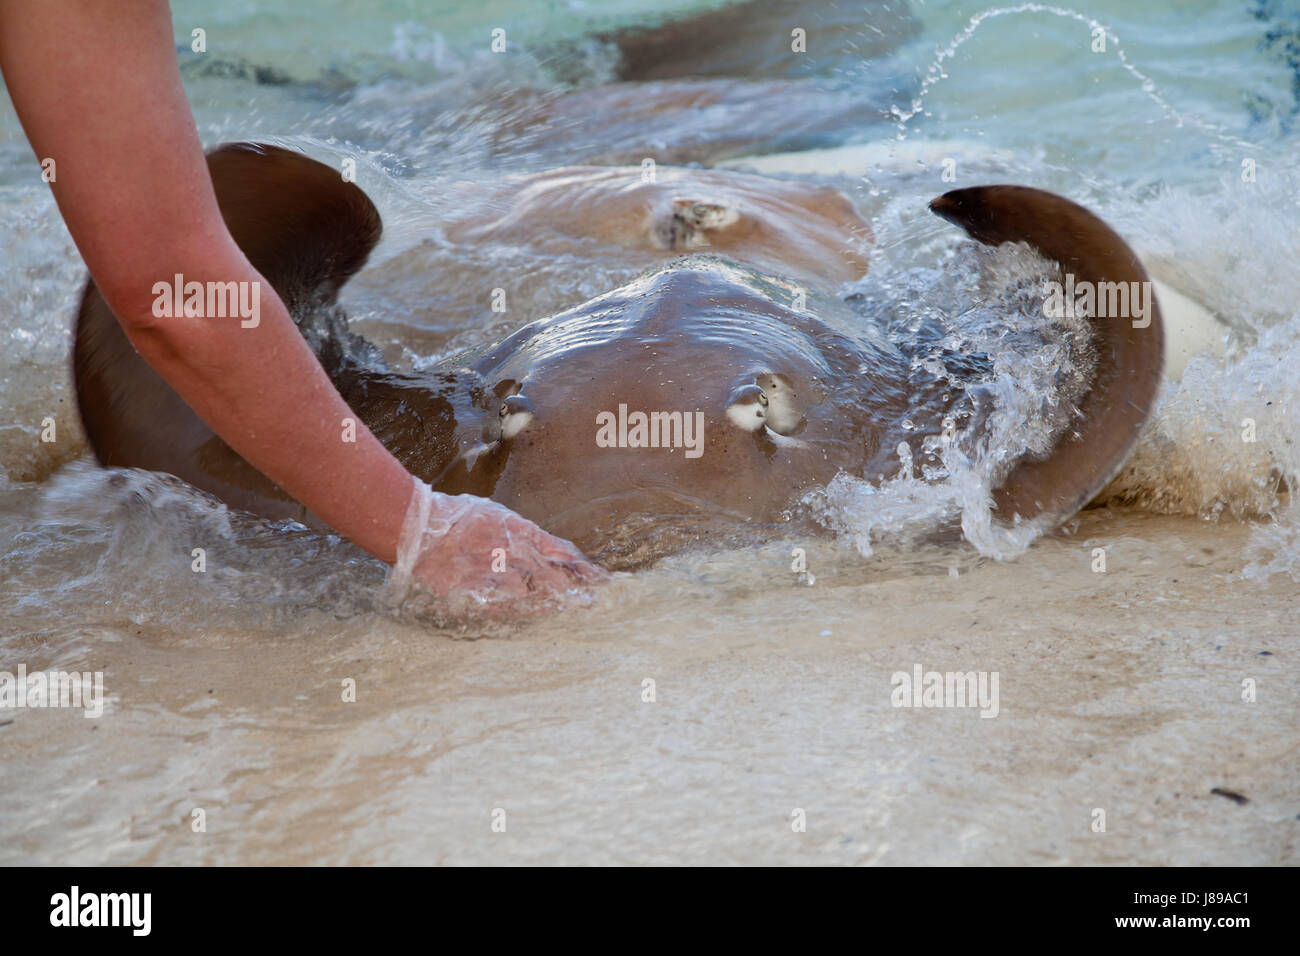 stingray on the beach while feeding Stock Photo